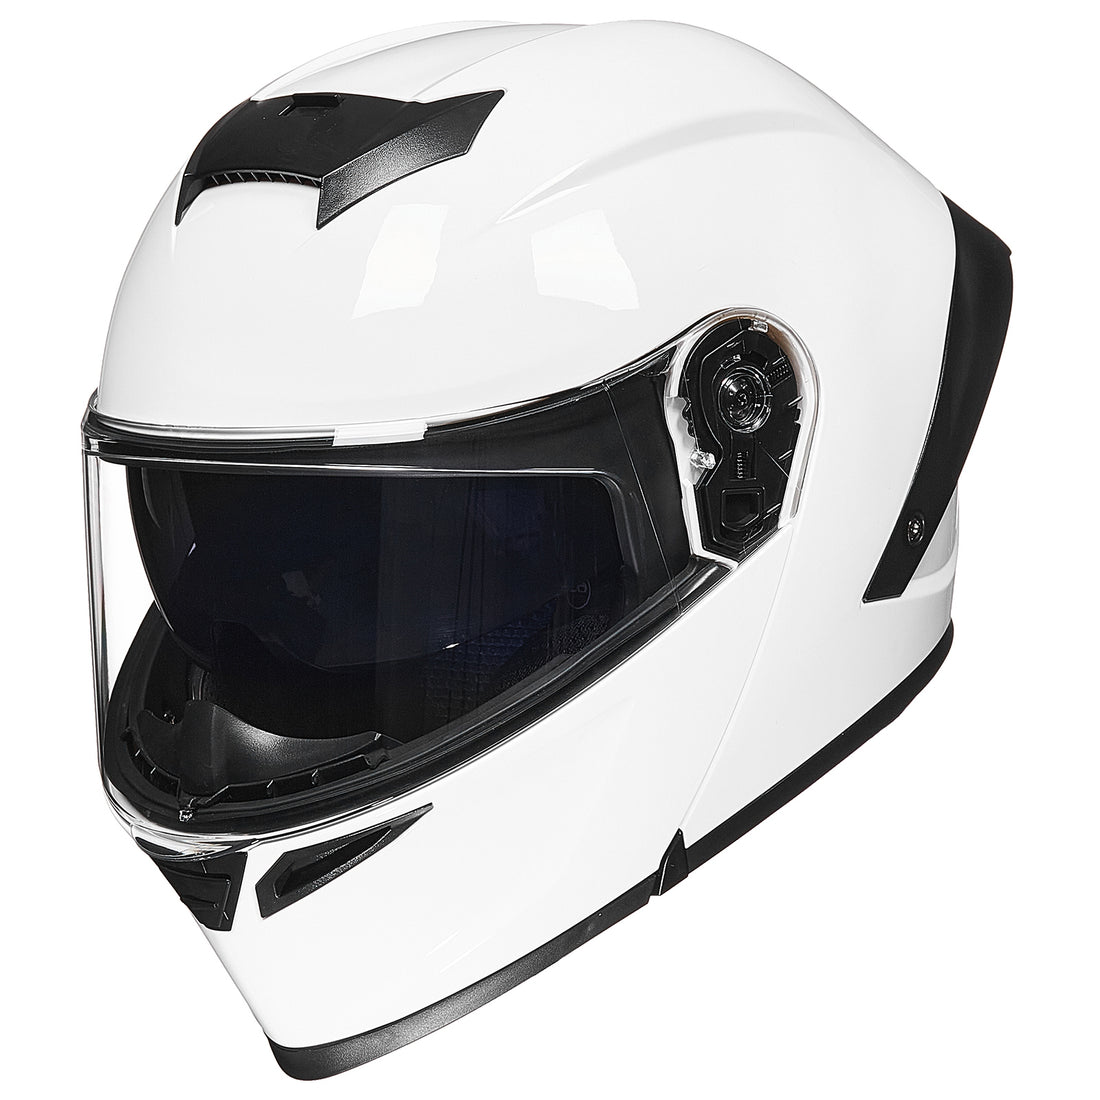 Buy Dot Full Face Motorcycle Monster Helmet For Kids & Adults